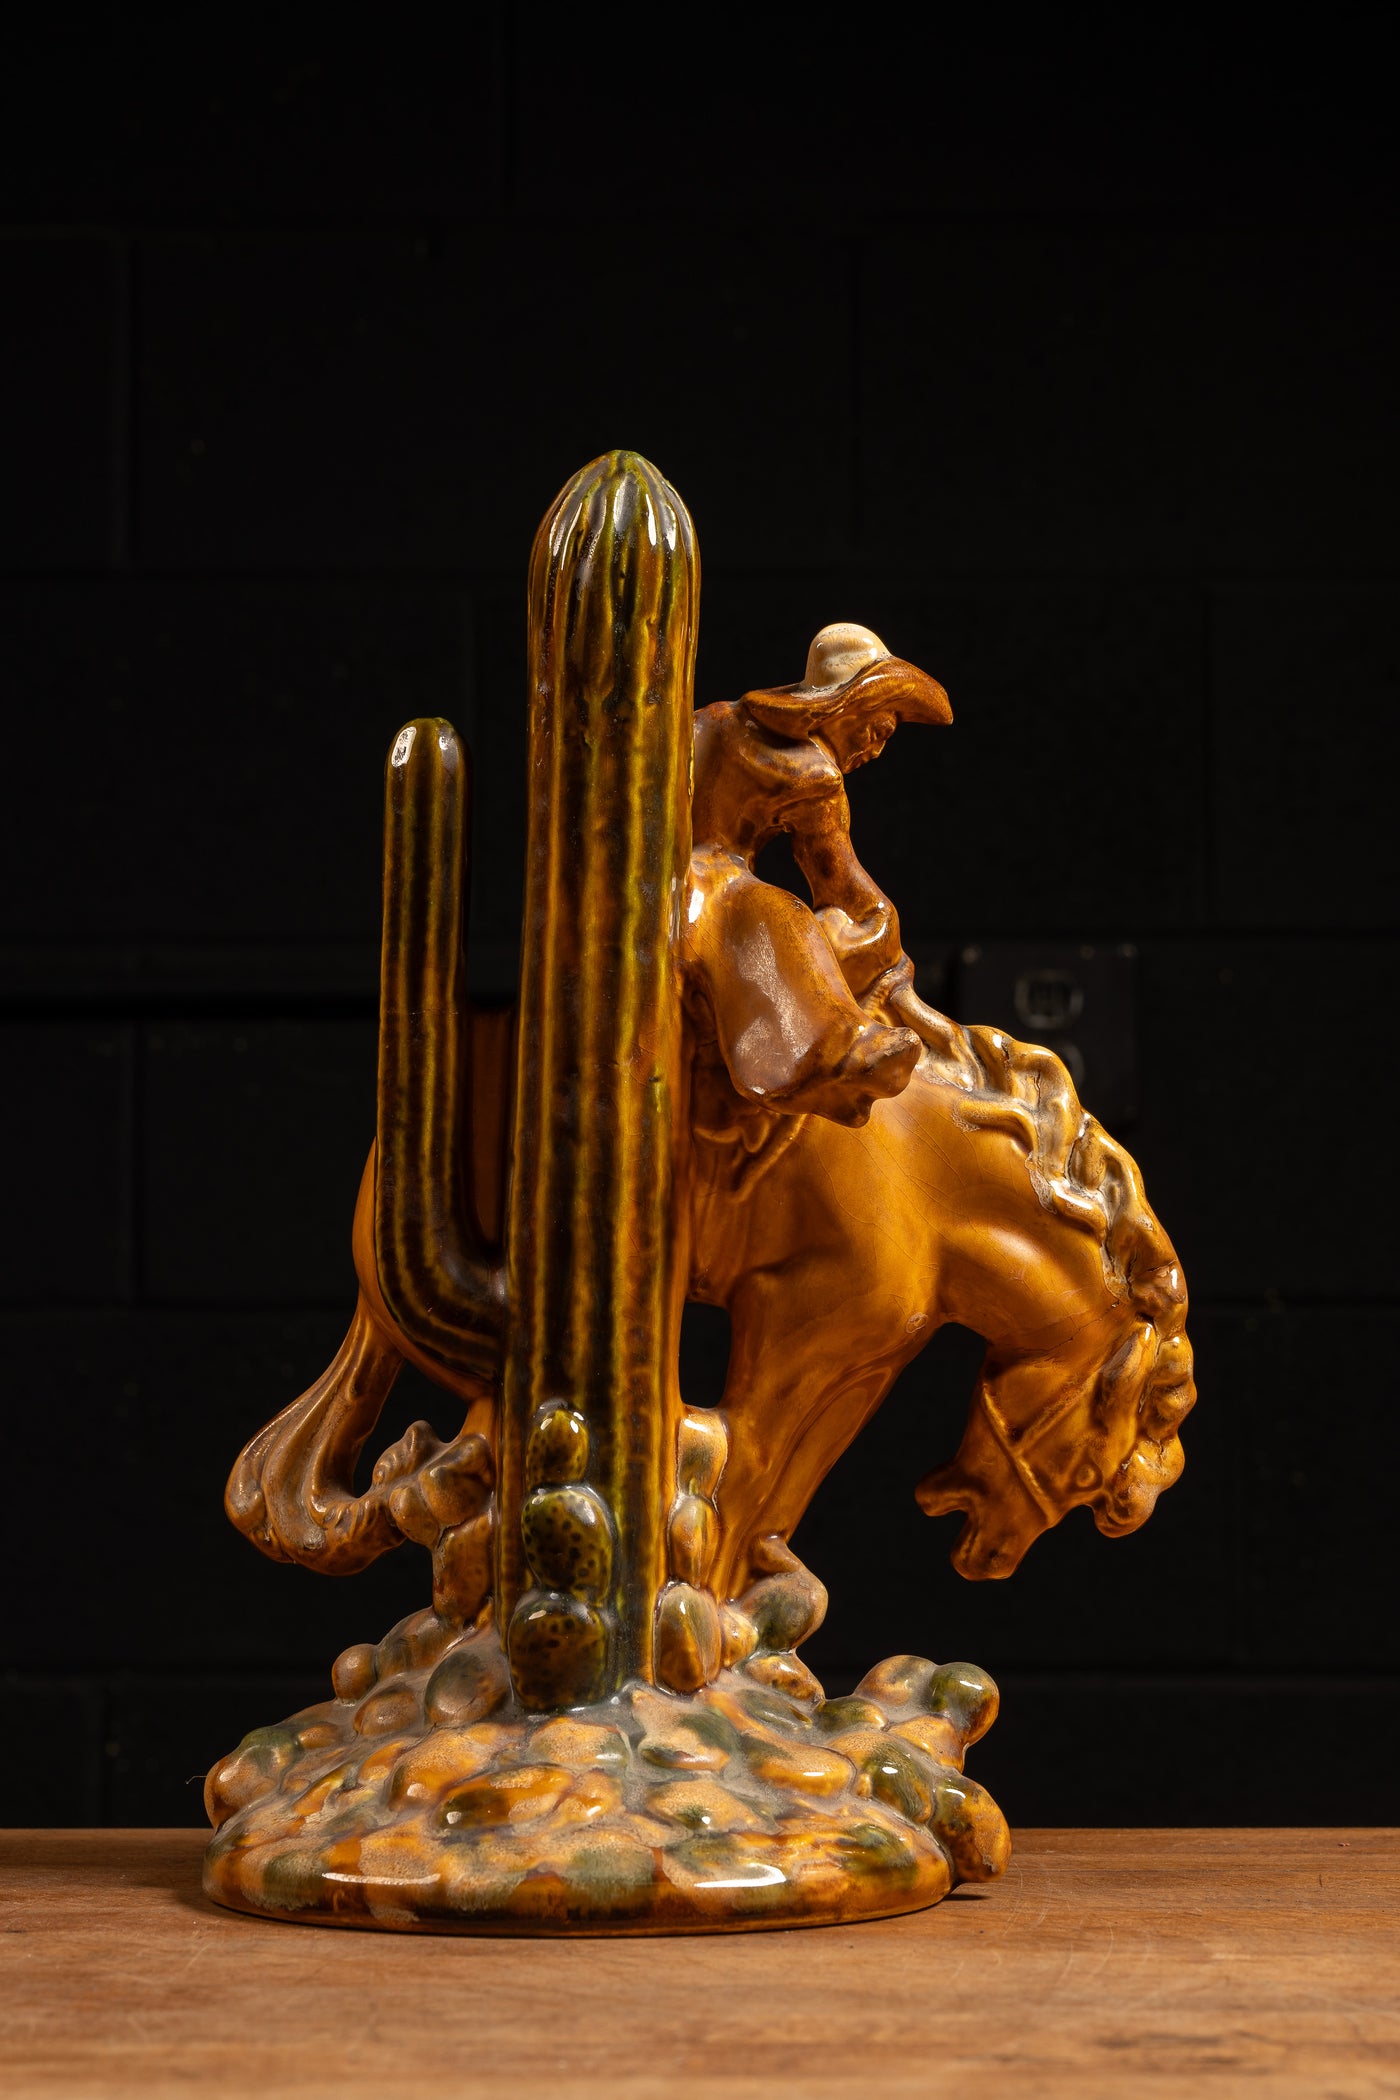 Haeger Bucking Bronco Rodeo Cowboy Ceramic Sculpture